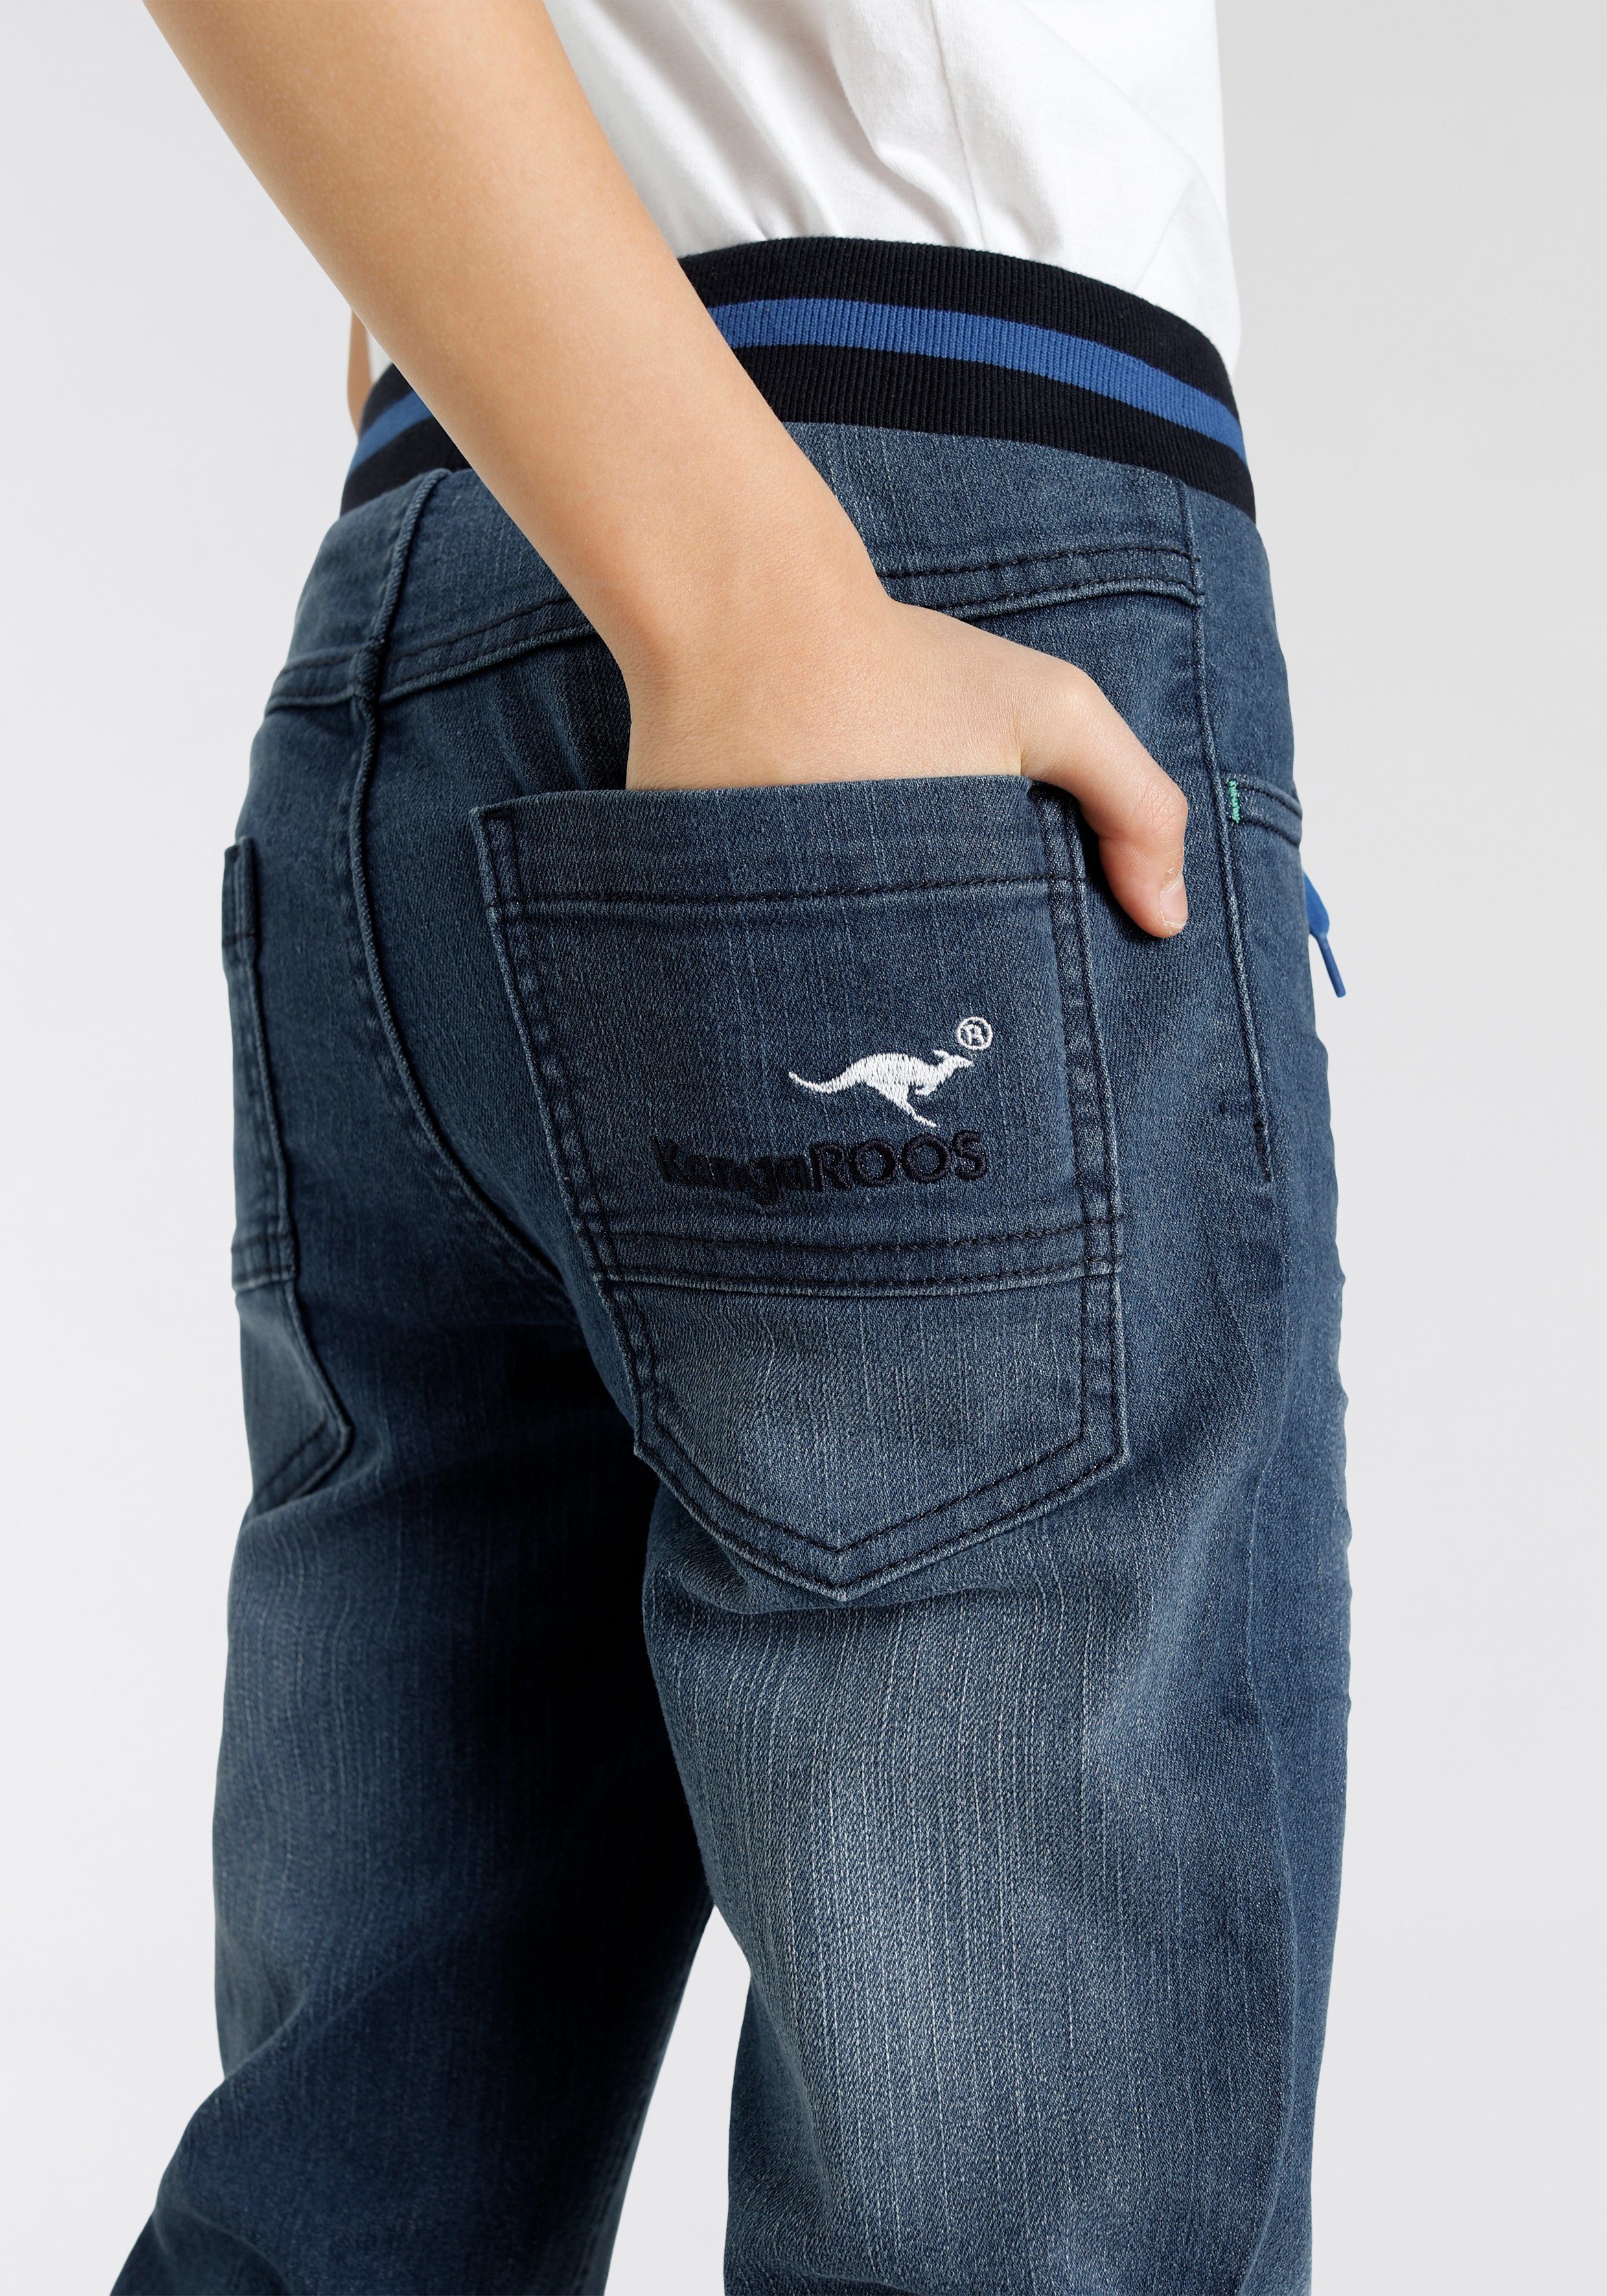 KangaROOS authentischer Waschung Stretch-Jeans Denim in